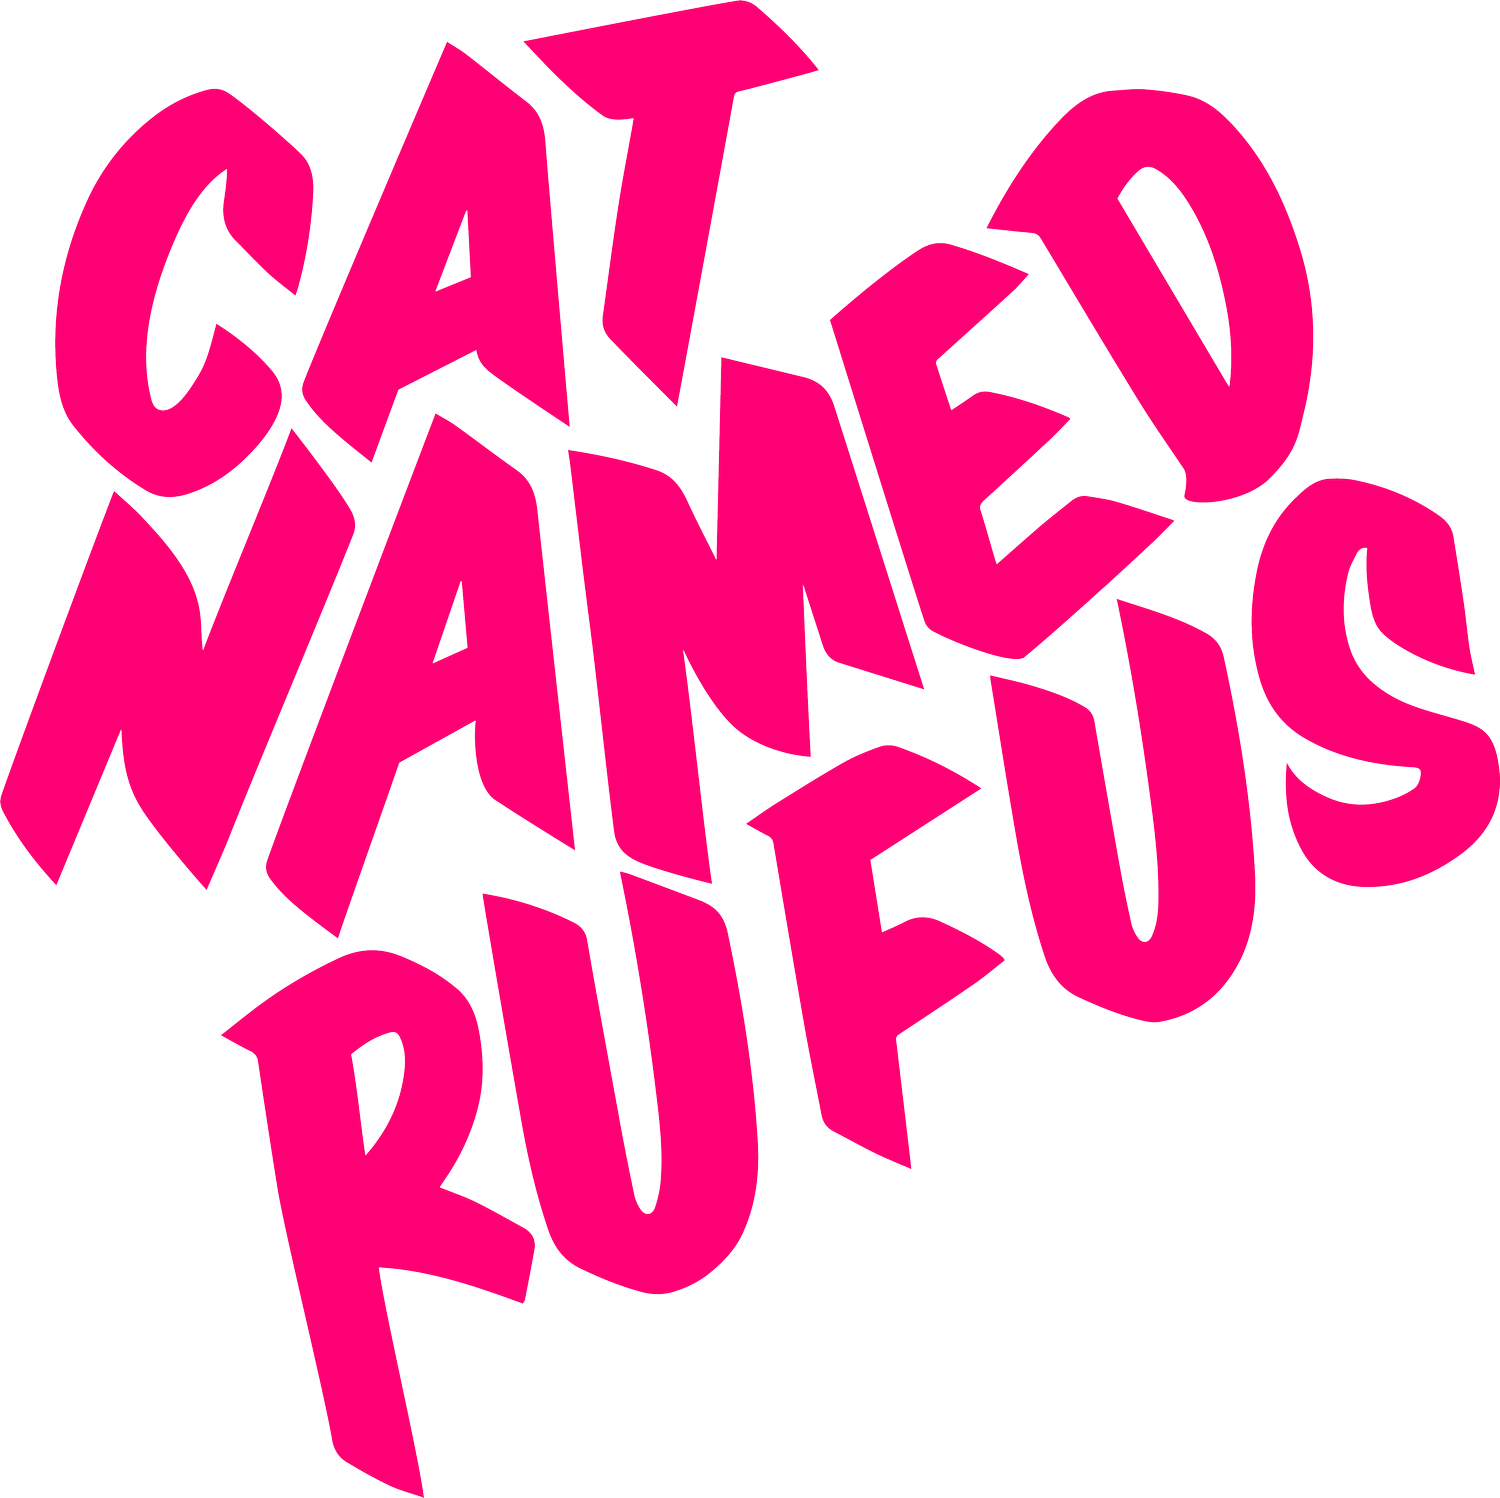 catnamedrufus